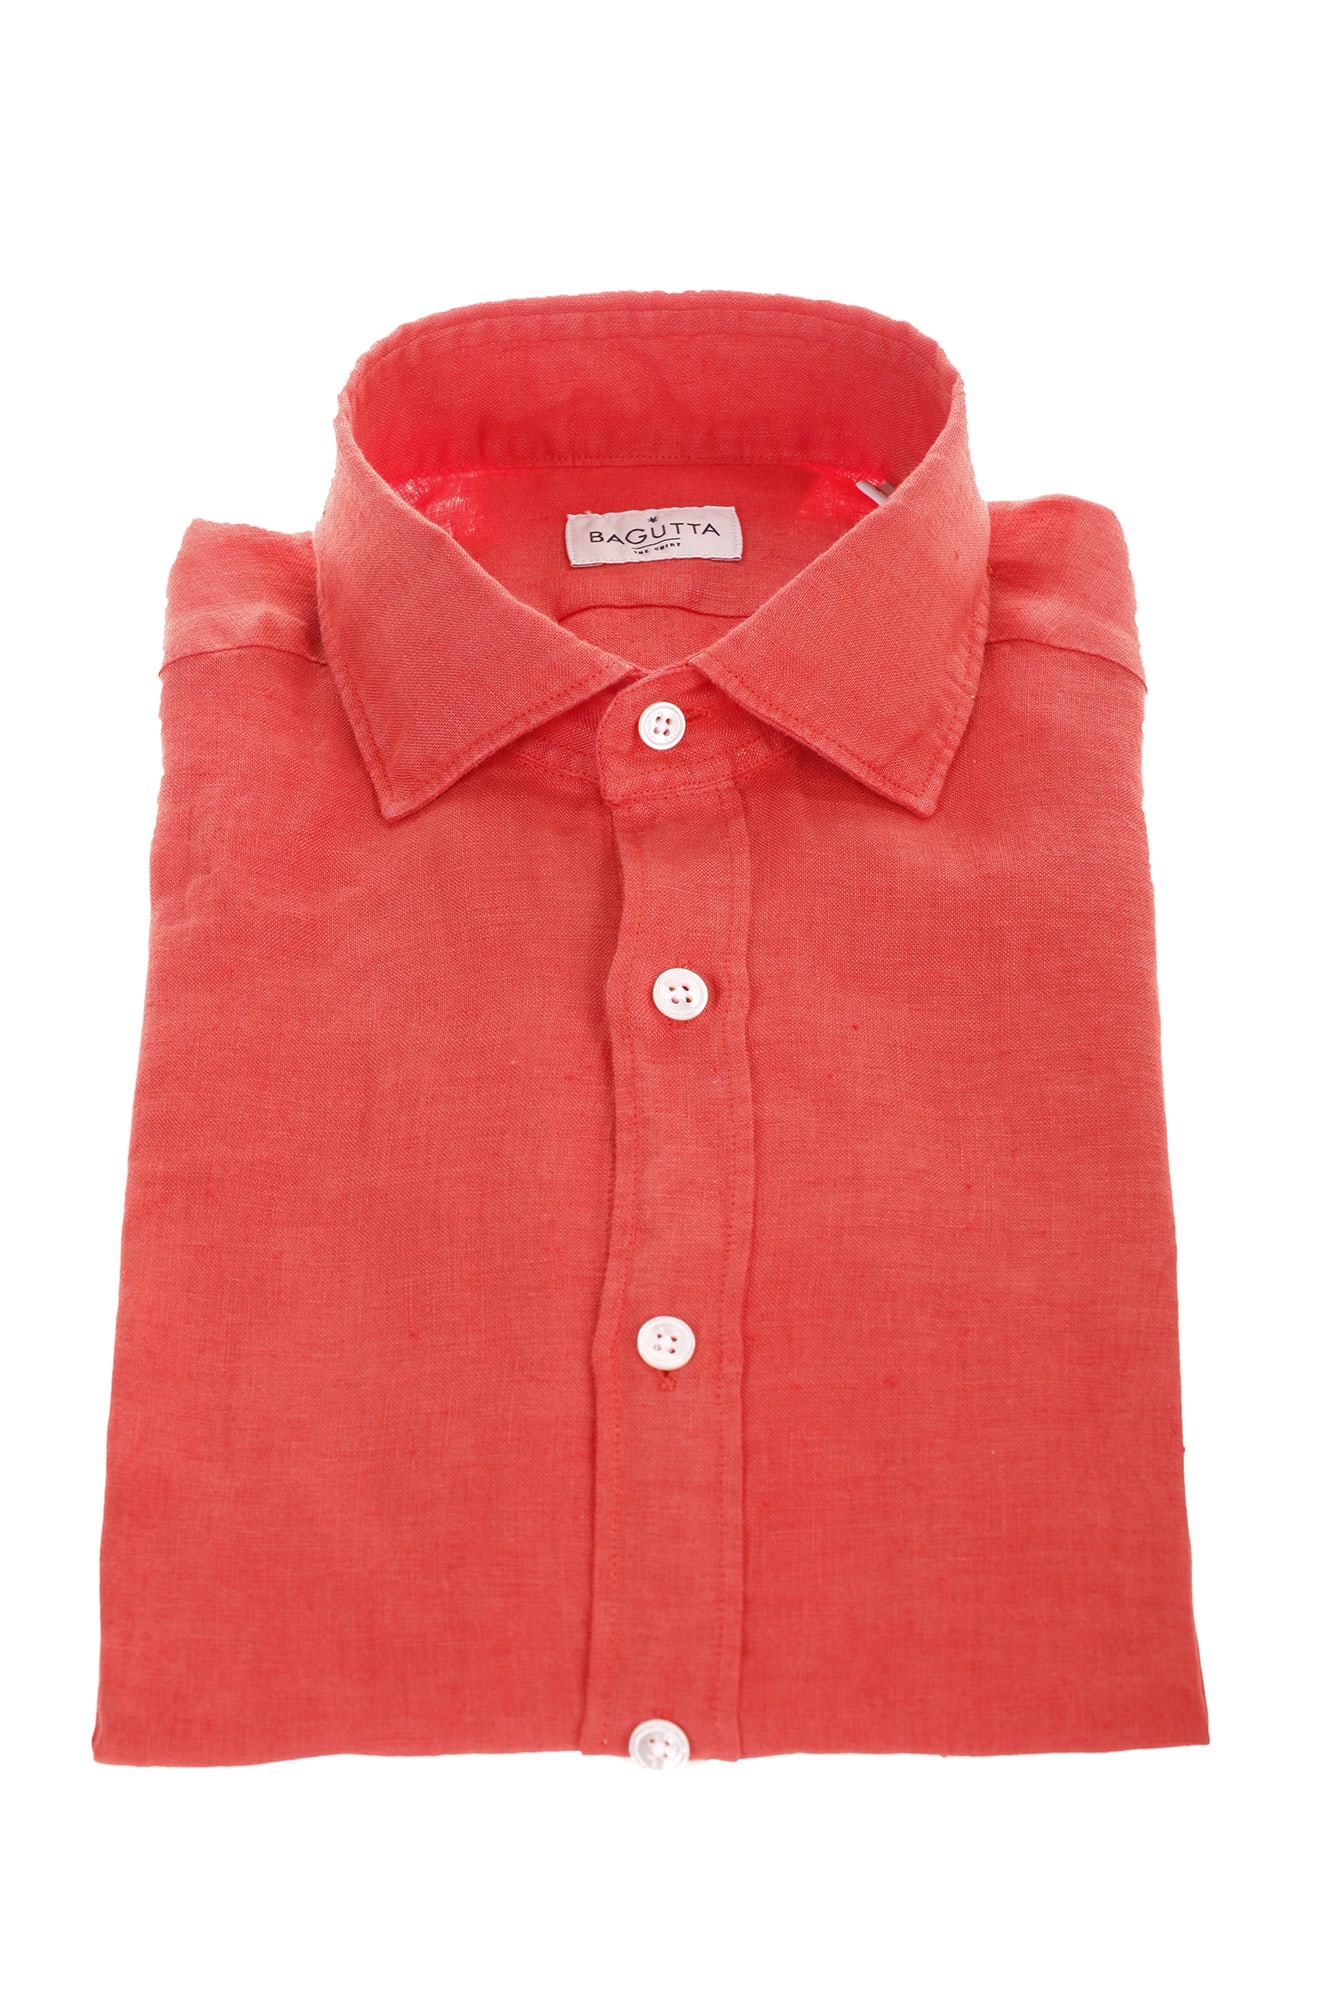 Bagutta red linen shirt